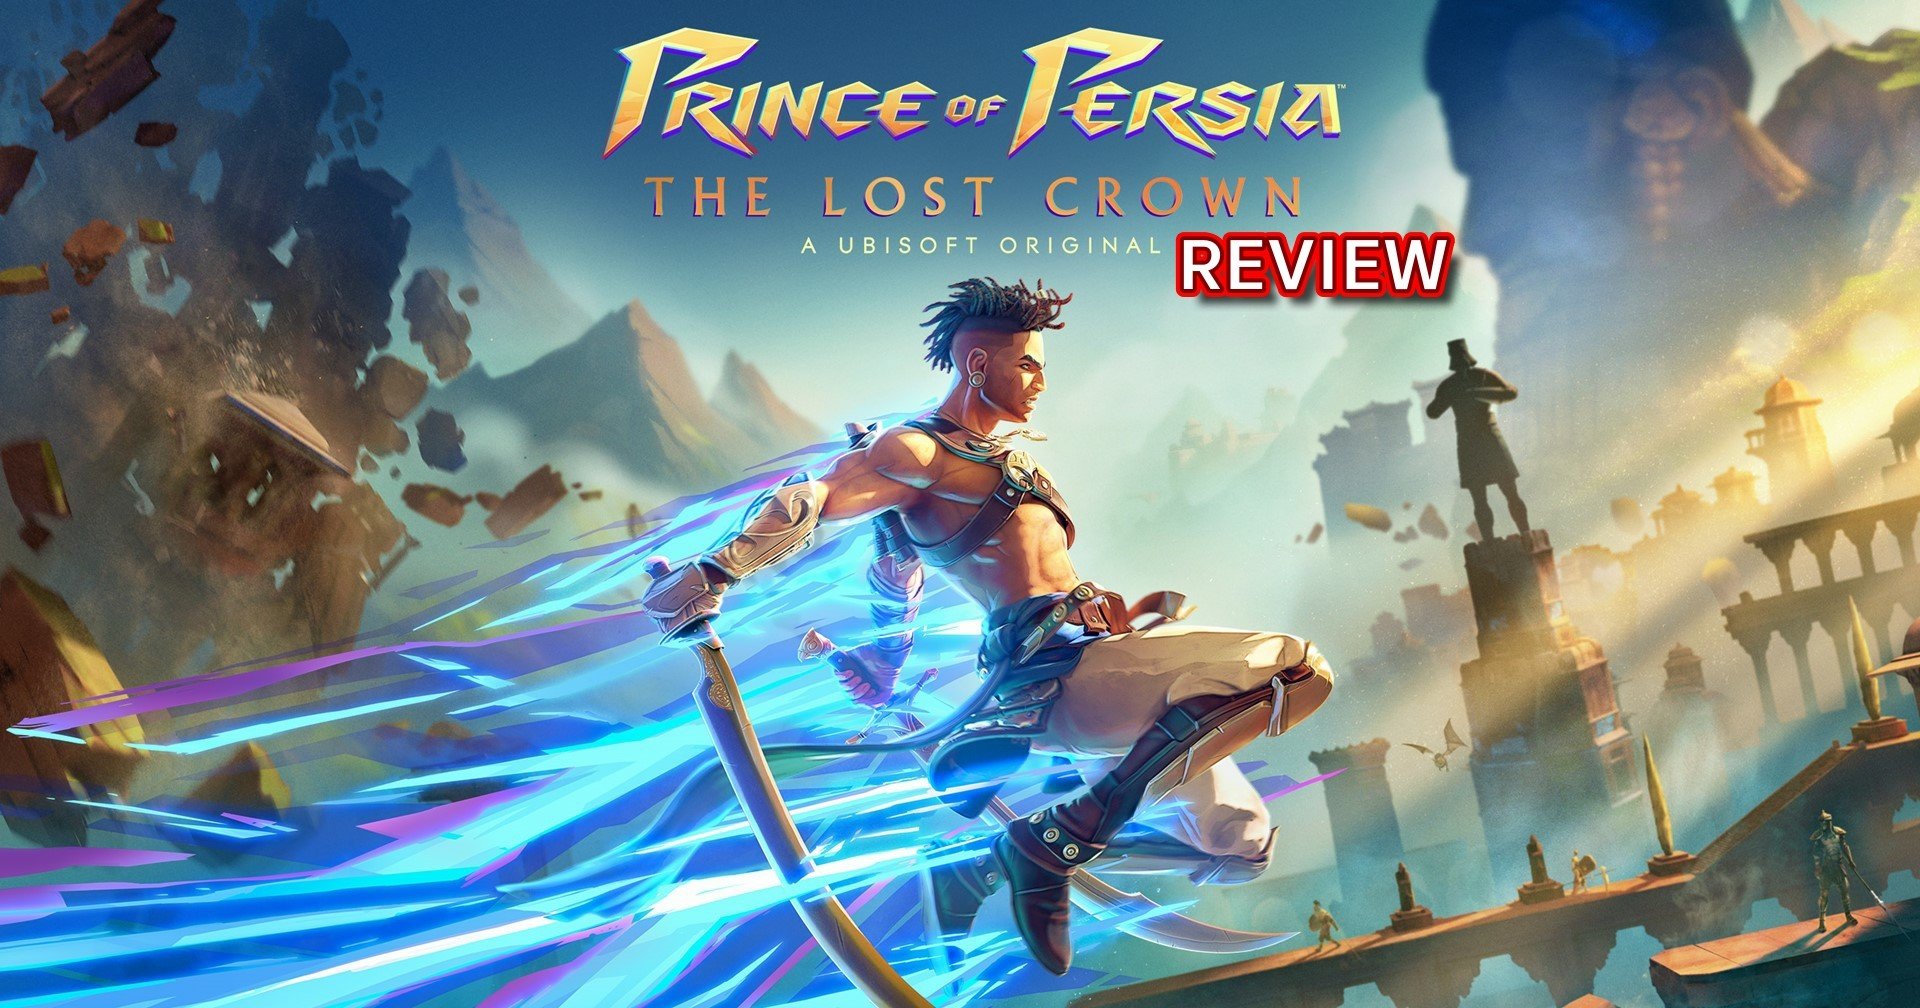 [รีวิวเกม] "Prince of Persia The Lost Crown" การกลับมาที่ยิ่งใหญ่ของเจ้าชายแห่งเปอร์เซีย